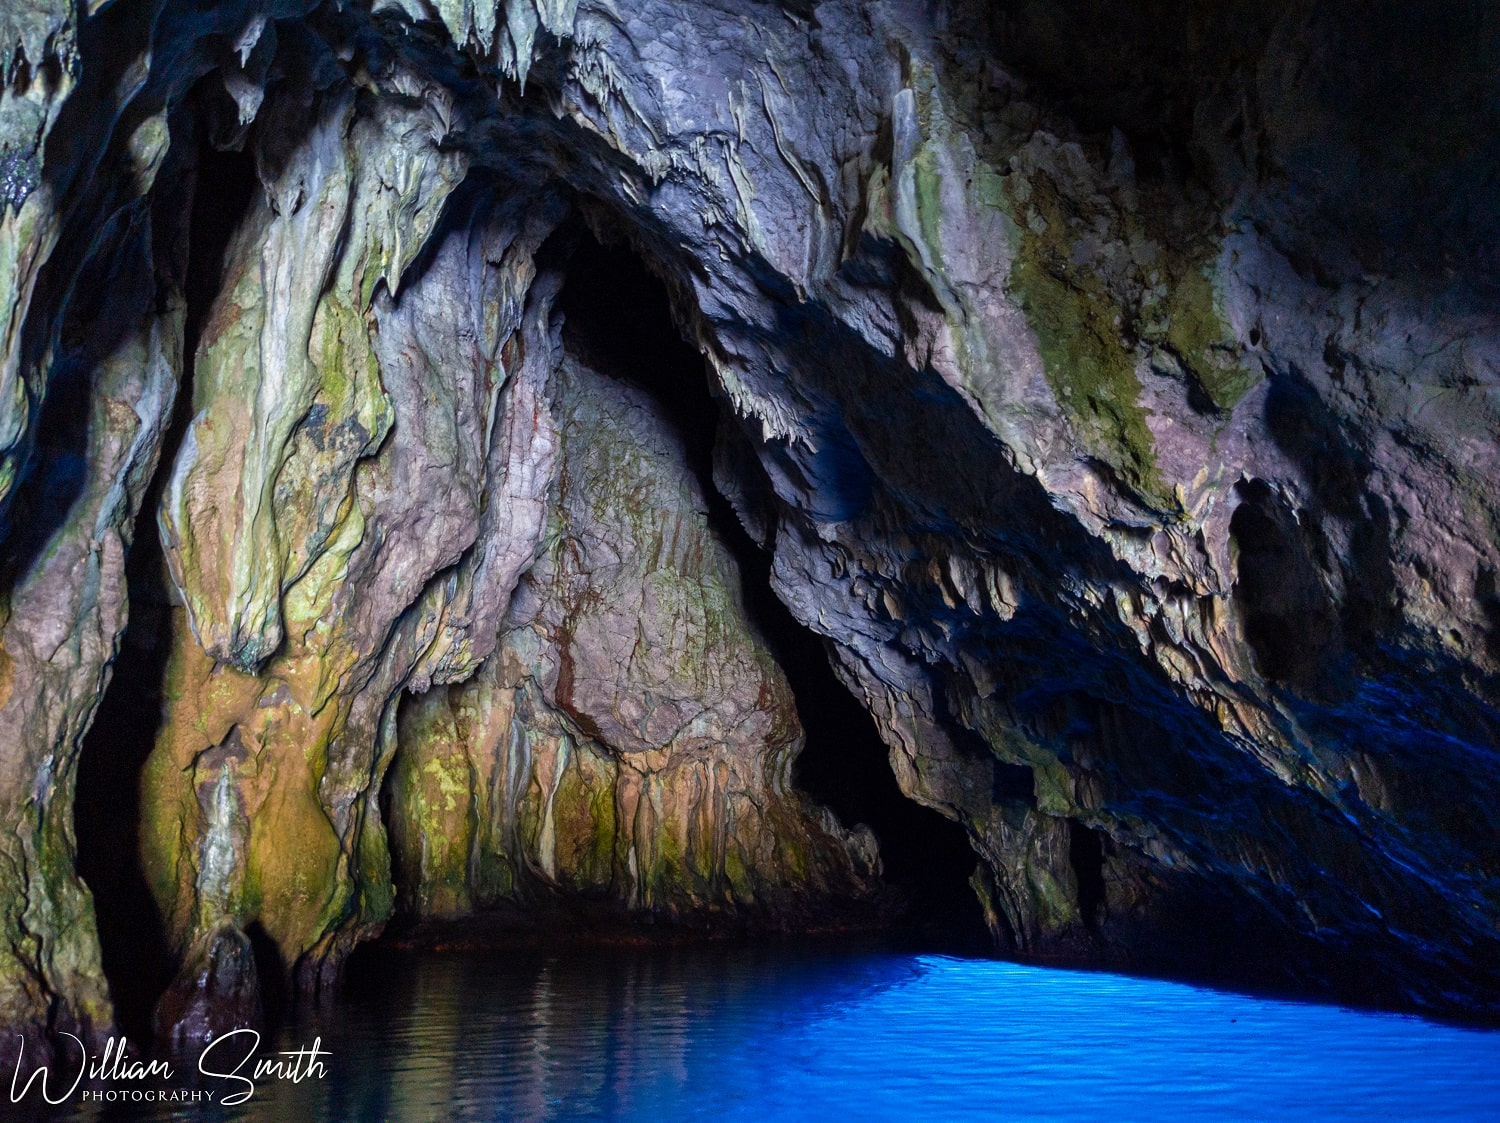 The Grotta Azzurra sea cave near Palinuro, Cilento